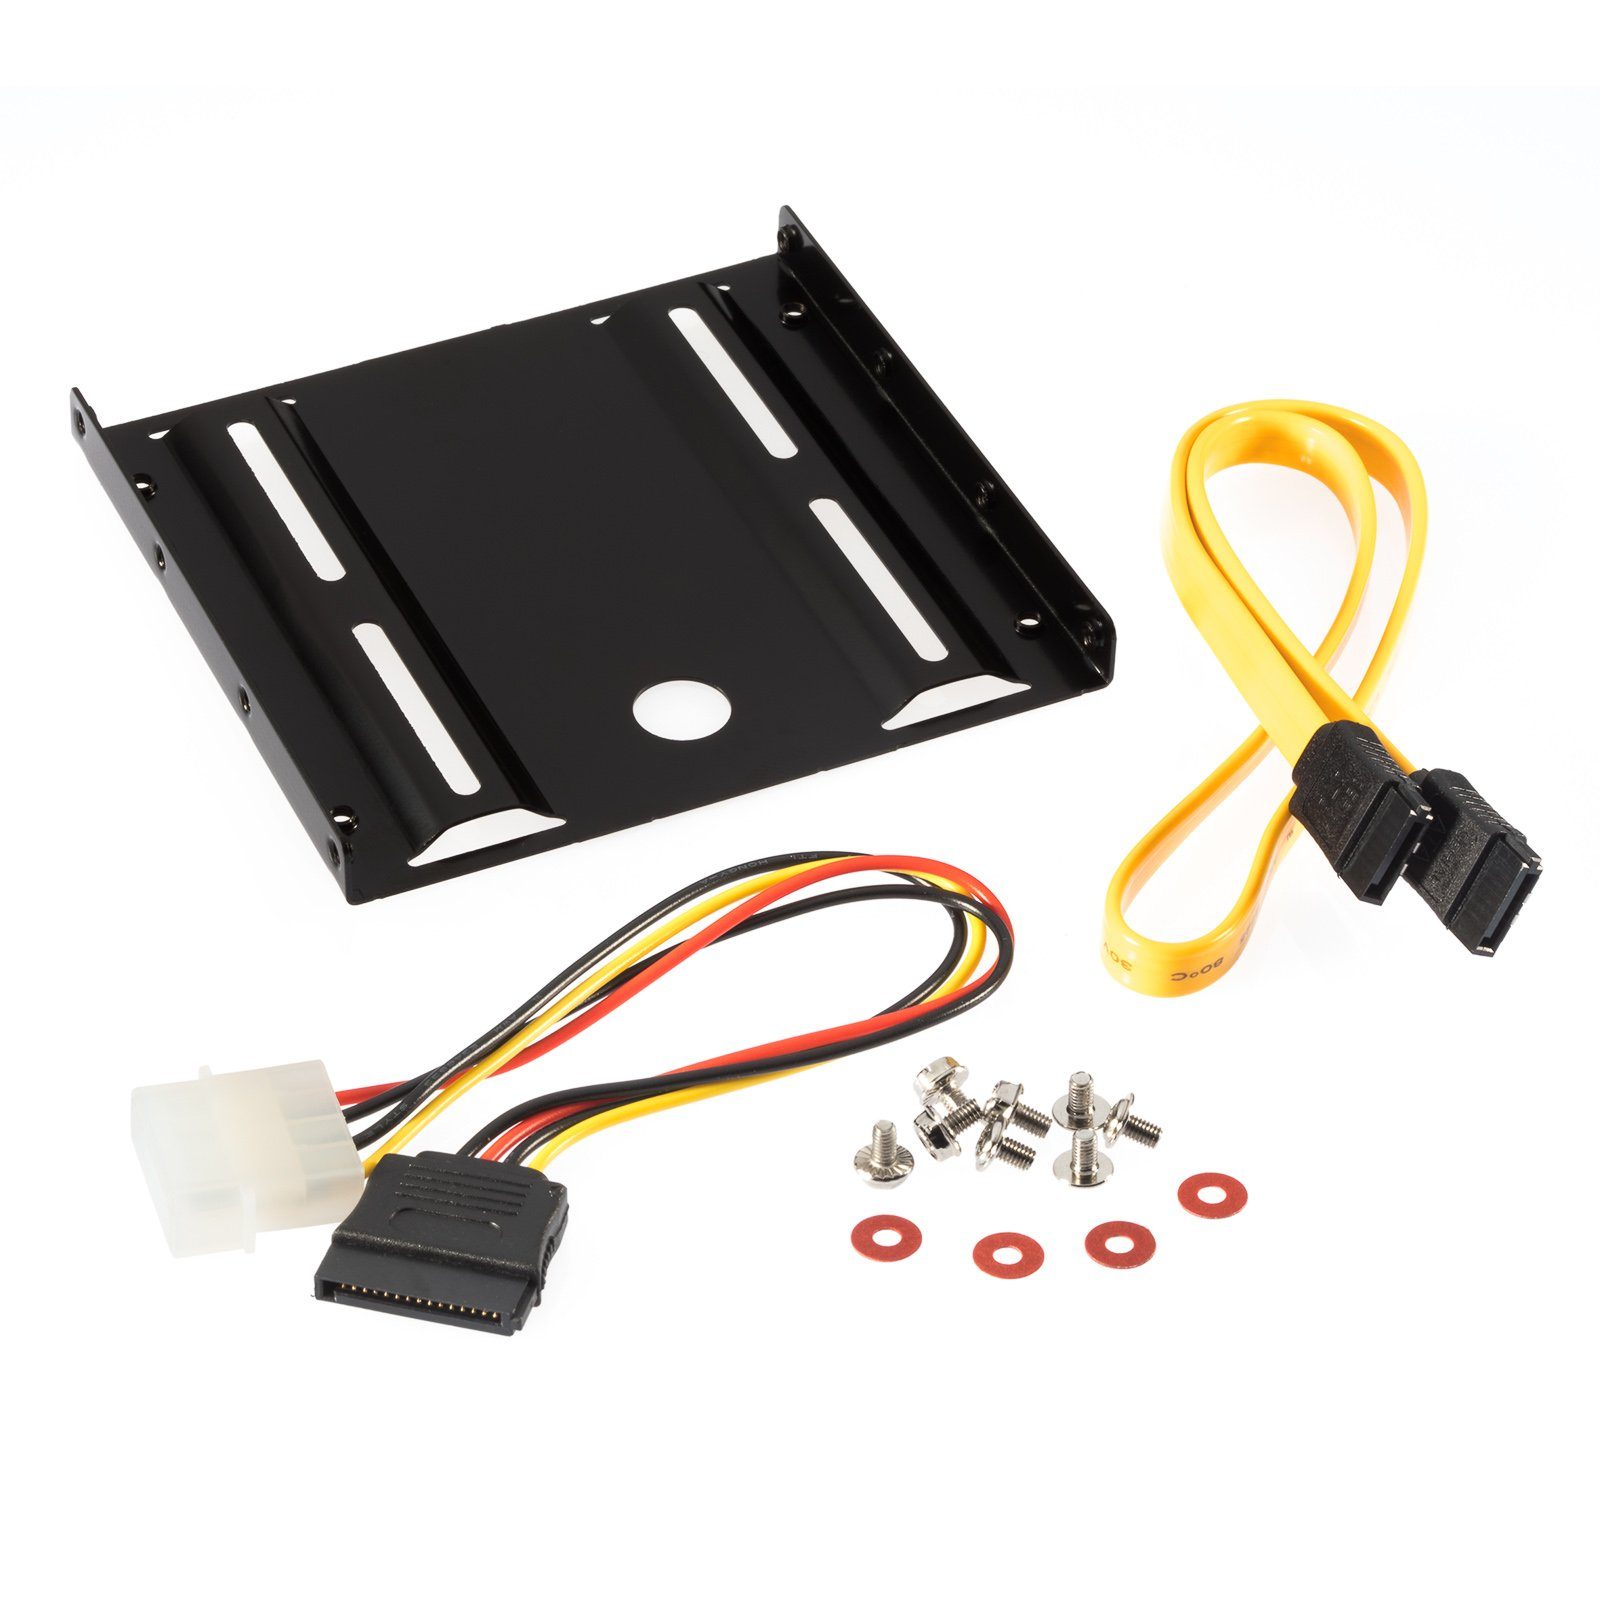 Poppstar Festplatten-Einbaurahmen, Einbau-Kit für interne 2,5 Zoll SSD-HDD inkl. Einbaurahmen, Schrauben